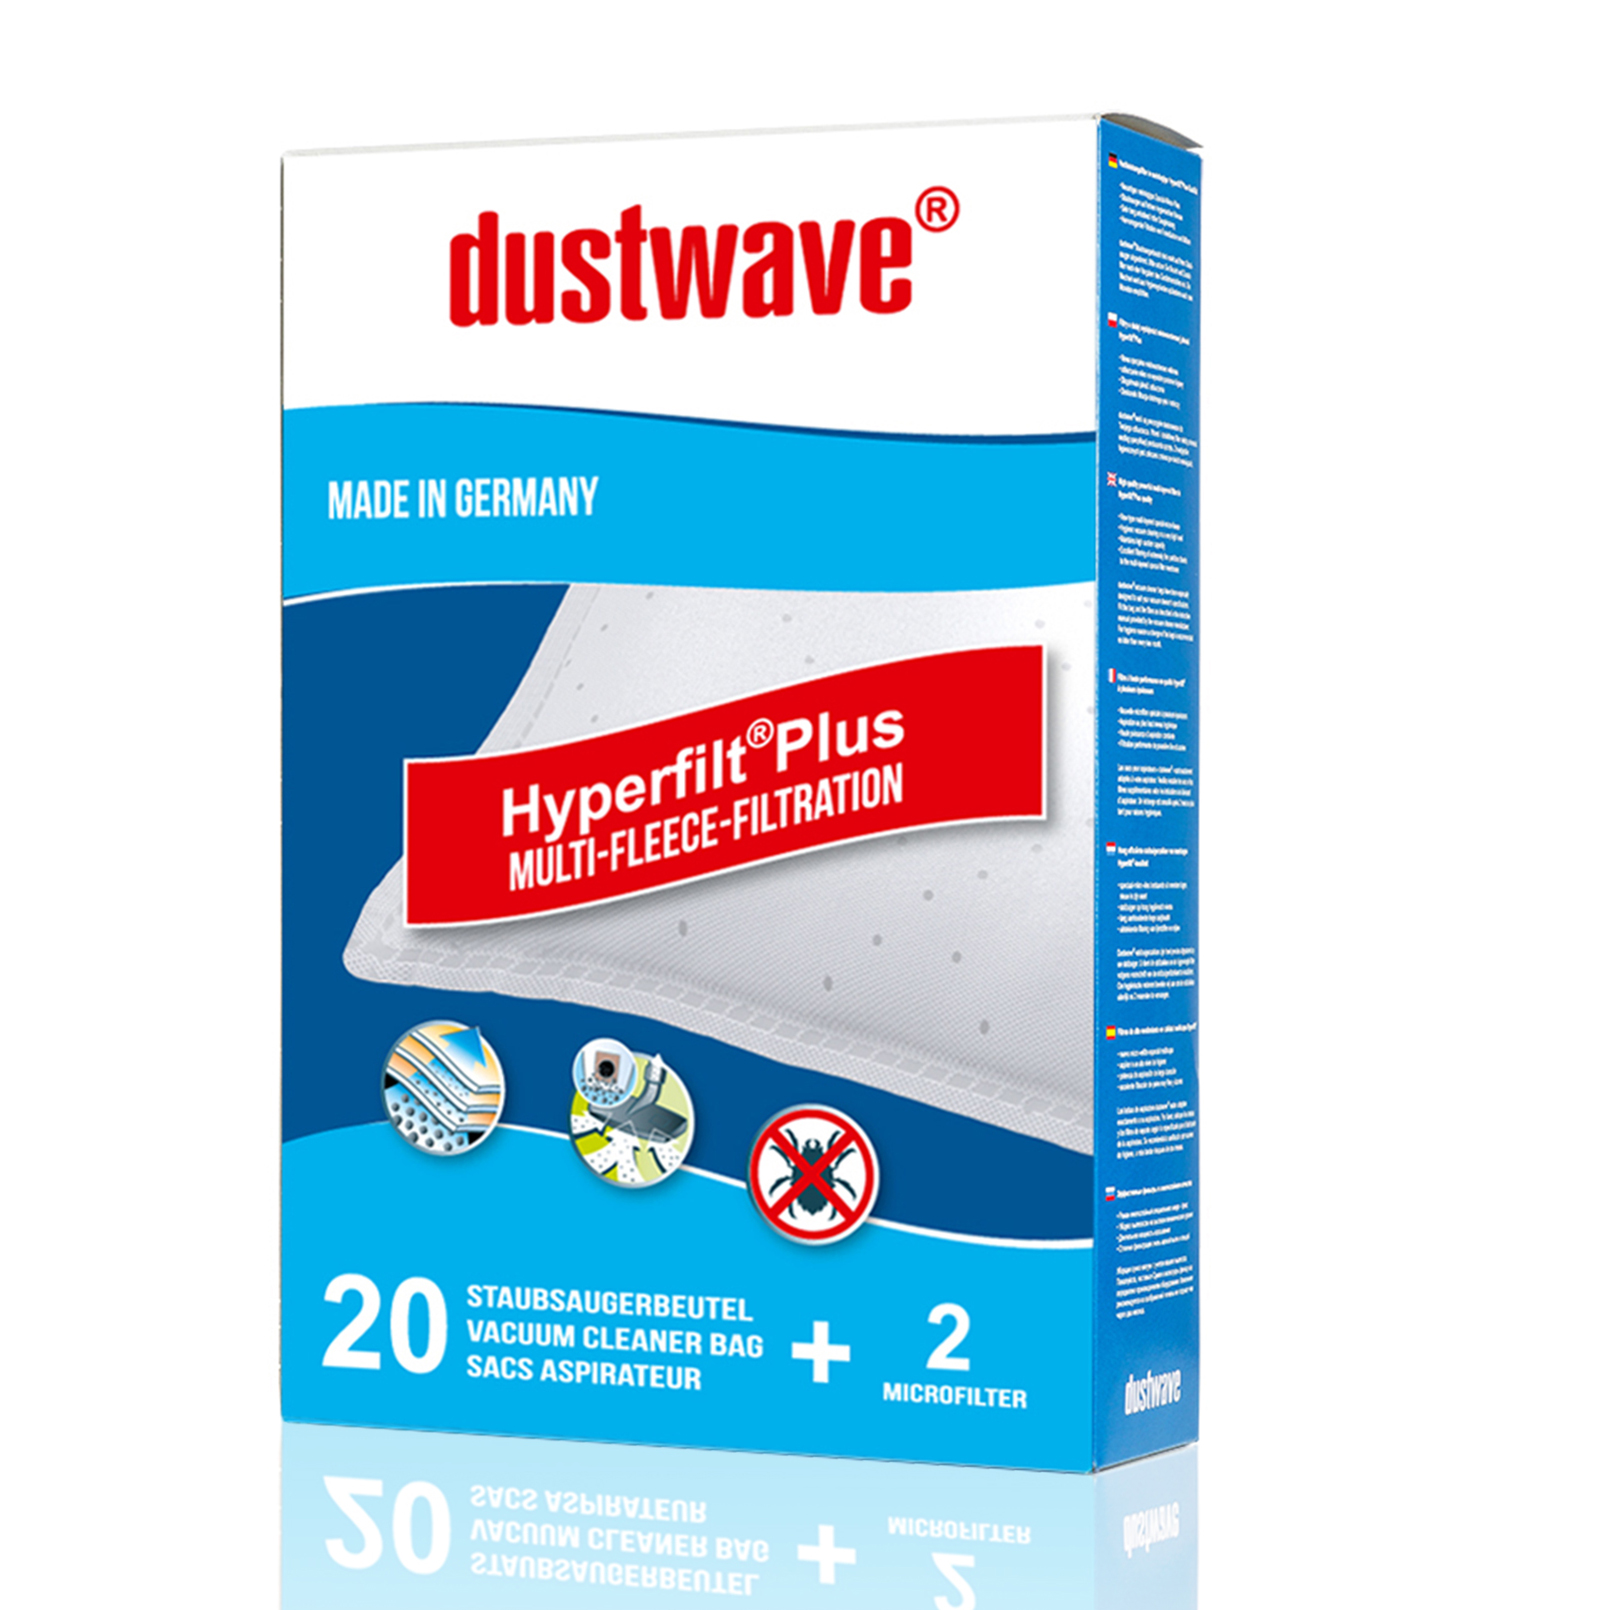 Dustwave® 5 Staubsaugerbeutel für Miele S7000 - S7999 Serie - hocheffizient, mehrlagiges Mikrovlies mit Hygieneverschluss - Made in Germany